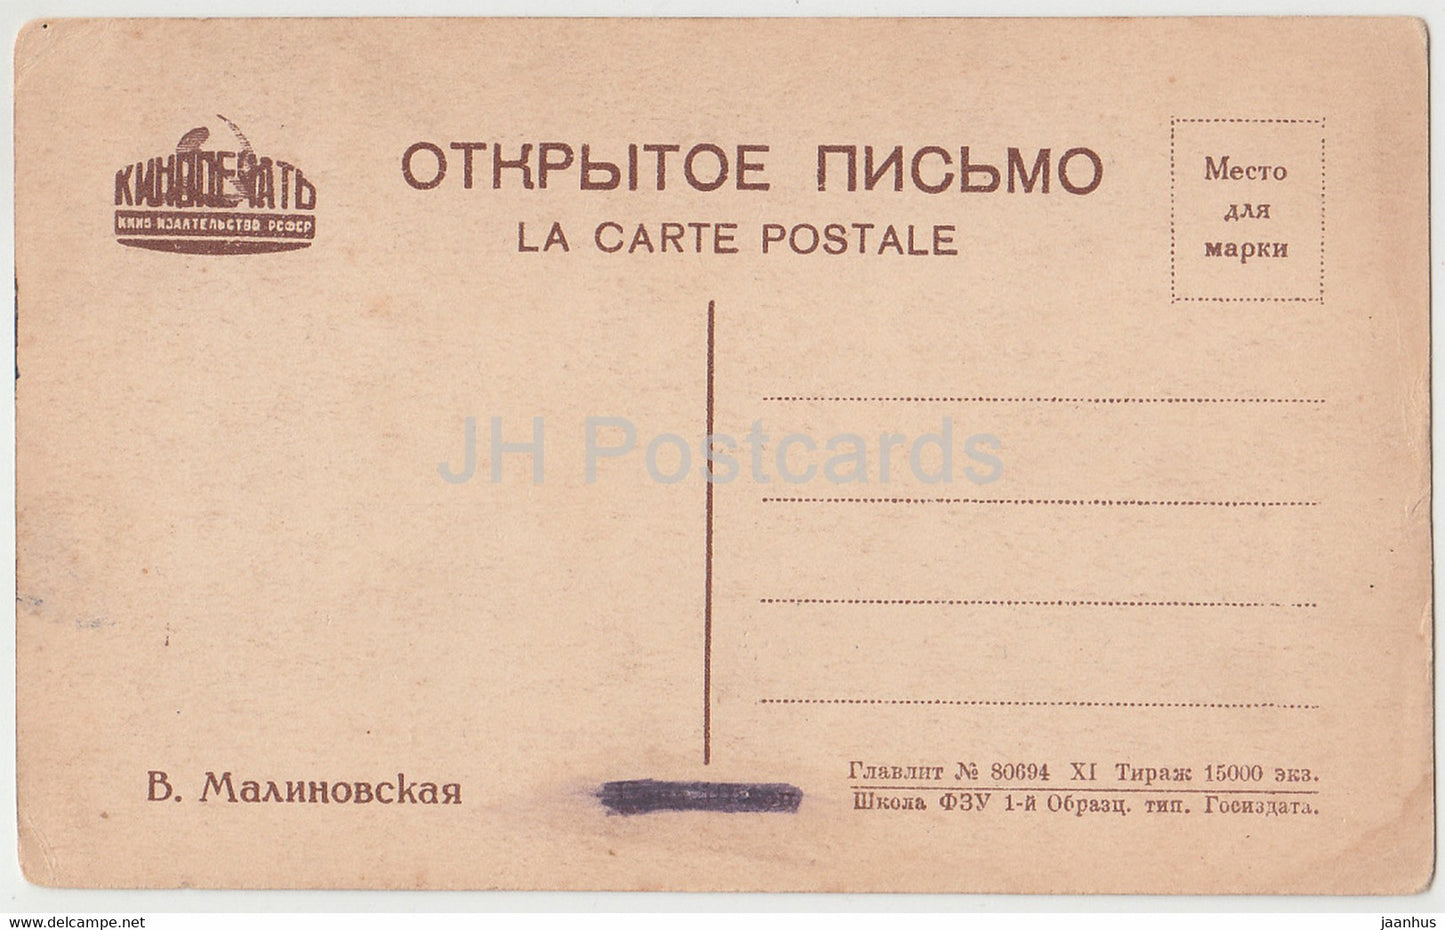 Russische Schauspielerin V. Malinovskaya - Film - Film - alte Postkarte - Russland UdSSR - unbenutzt